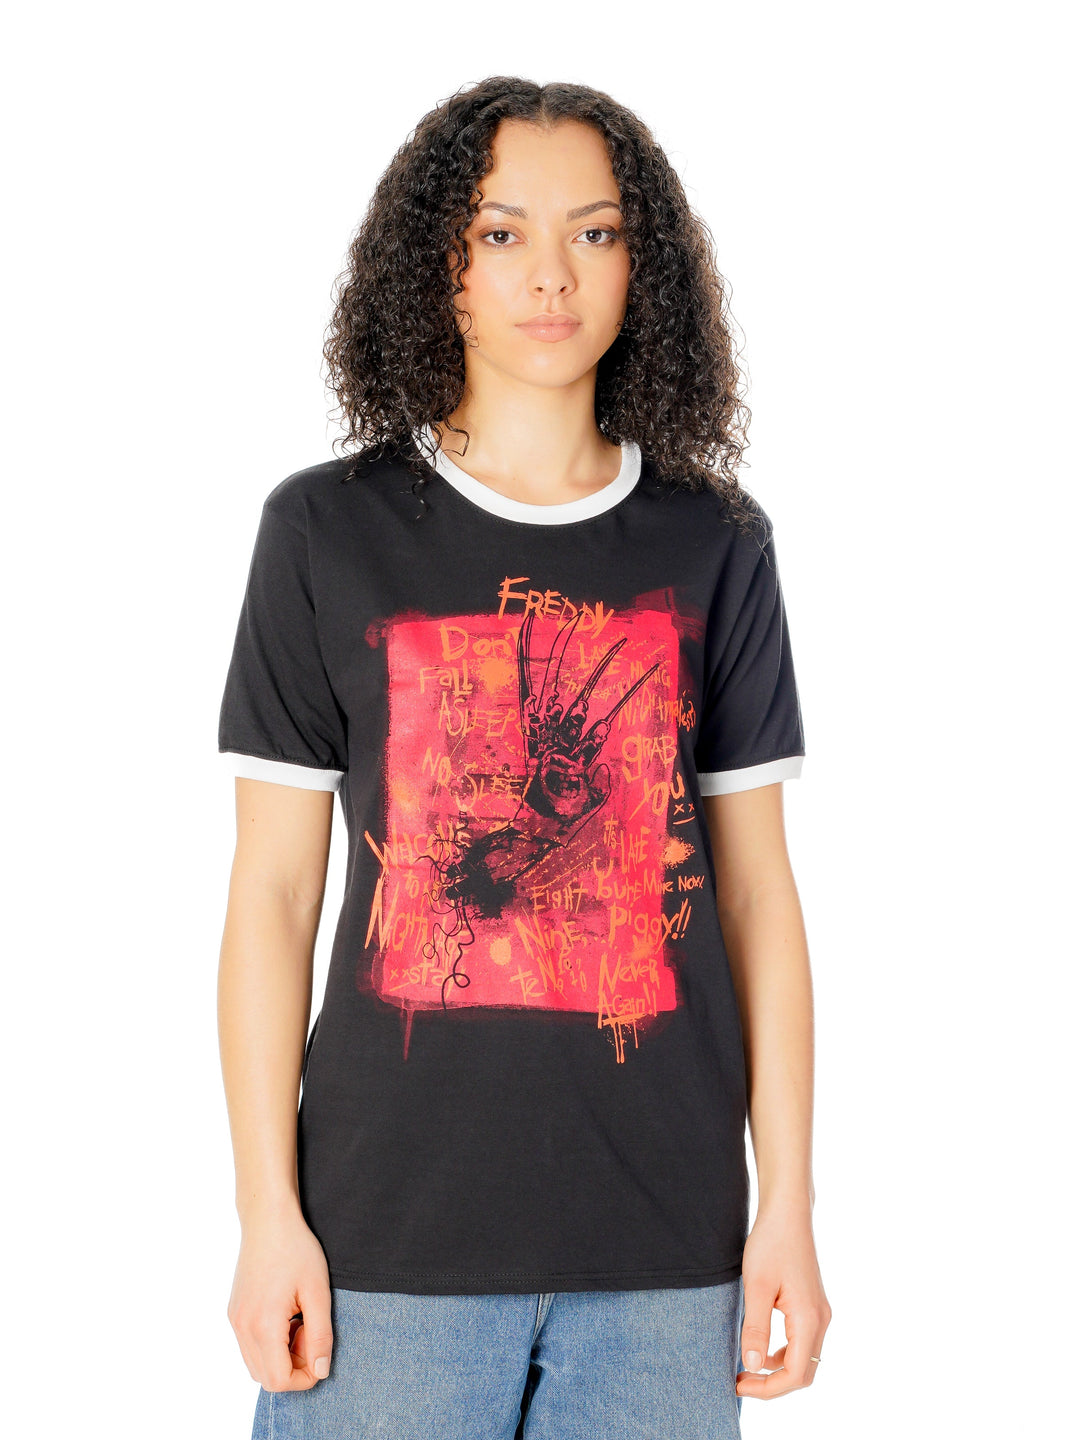 Nightmare On Elm Street Freddy Claw T Shirt_4